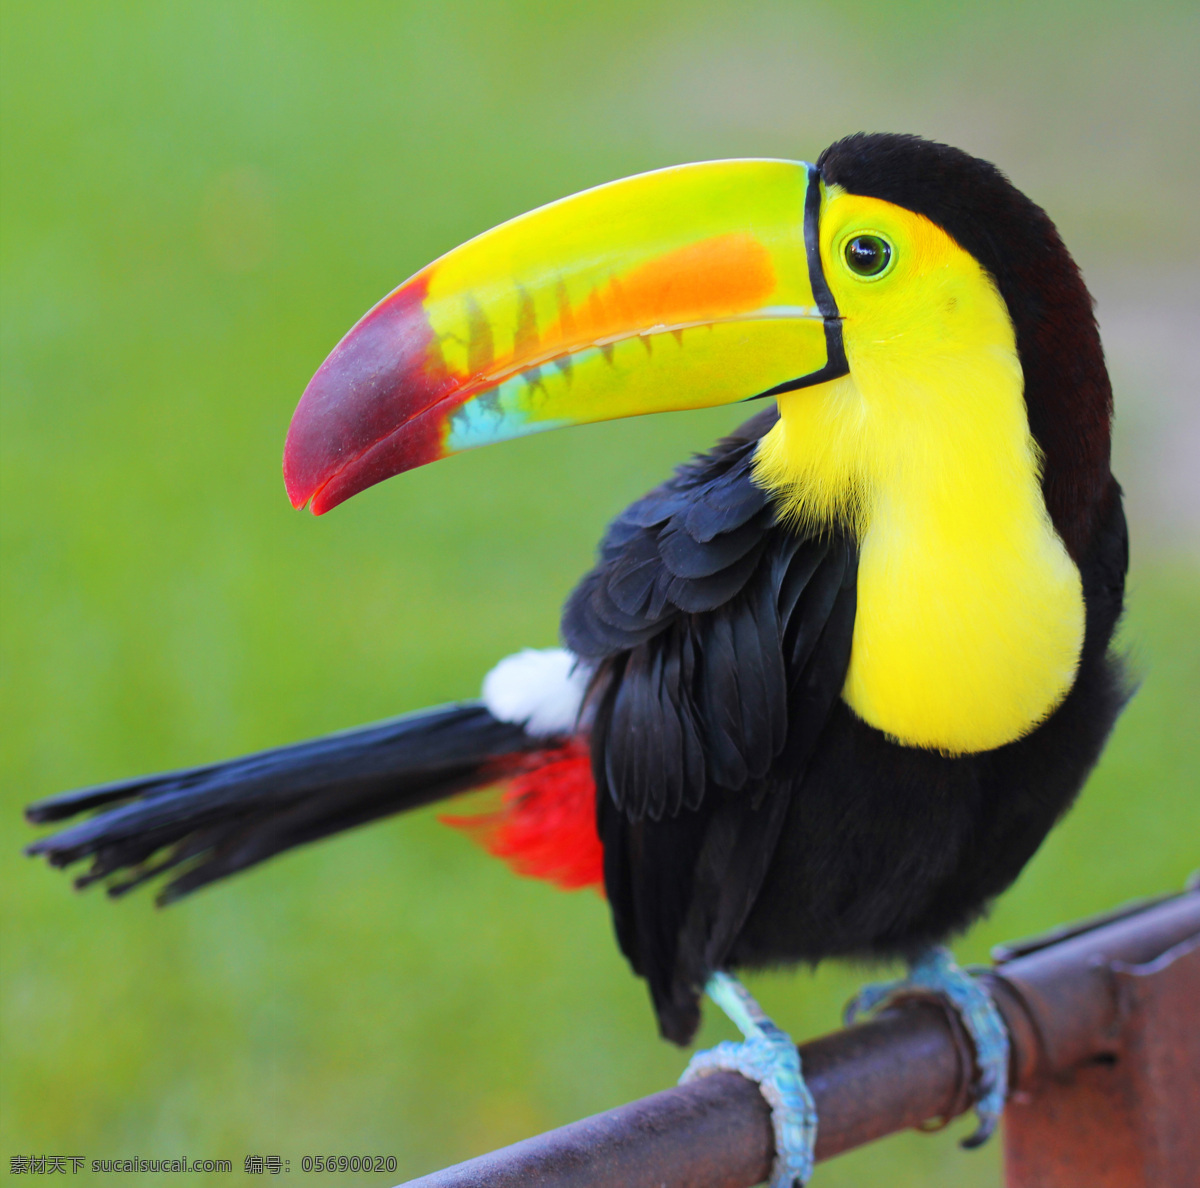 秦皇岛 野生 动物园 鹦鹉 唯美 意境 公园 野生动物园 动物 鸟 可爱 生物世界 鸟类